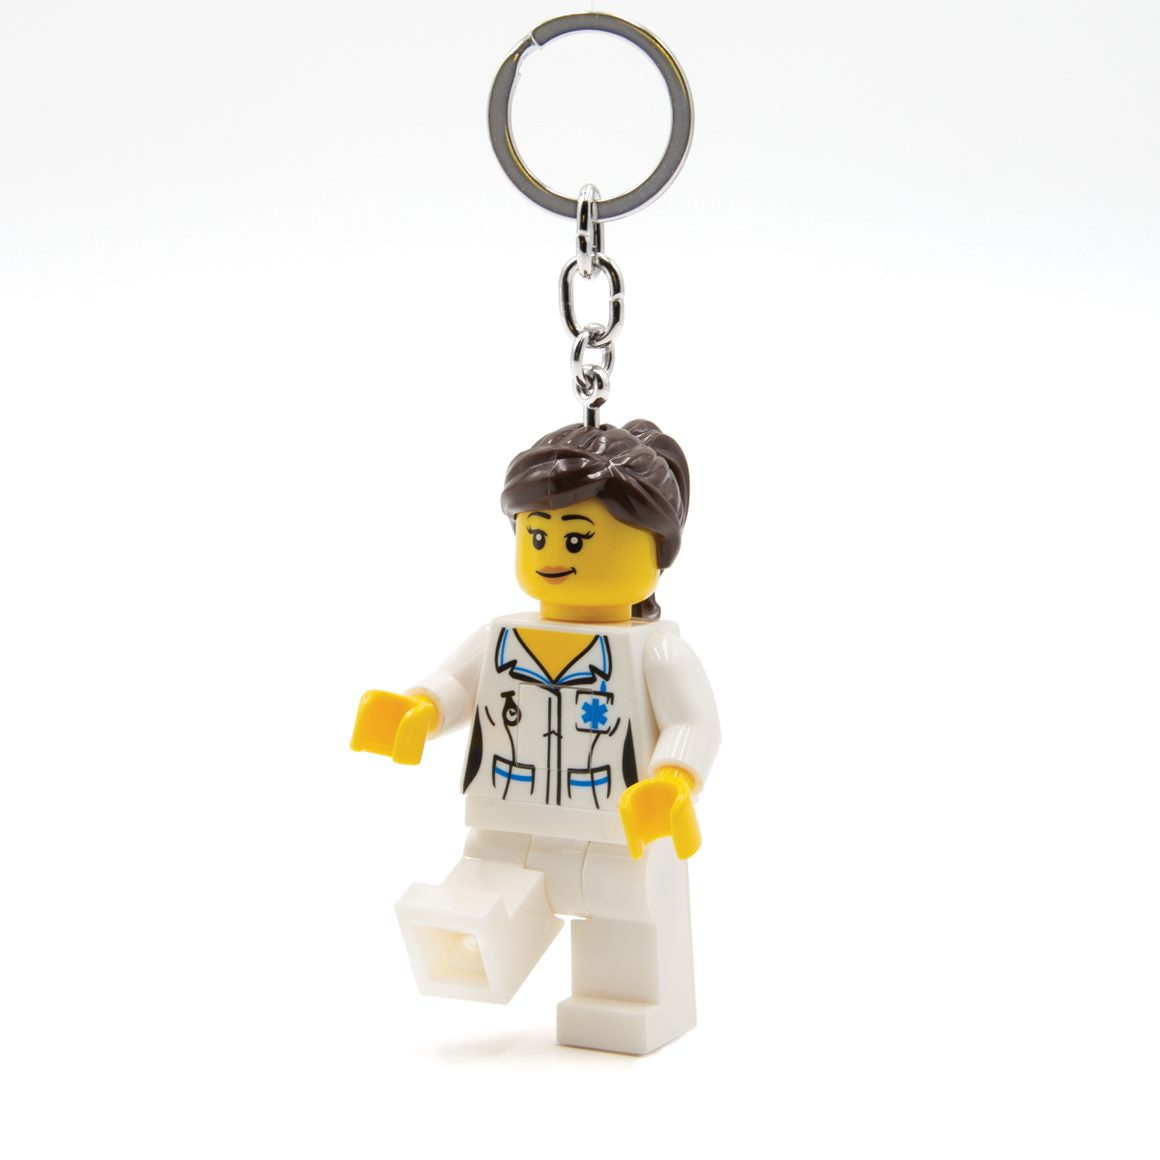 Lego Brunette Nurse Light Key Ring